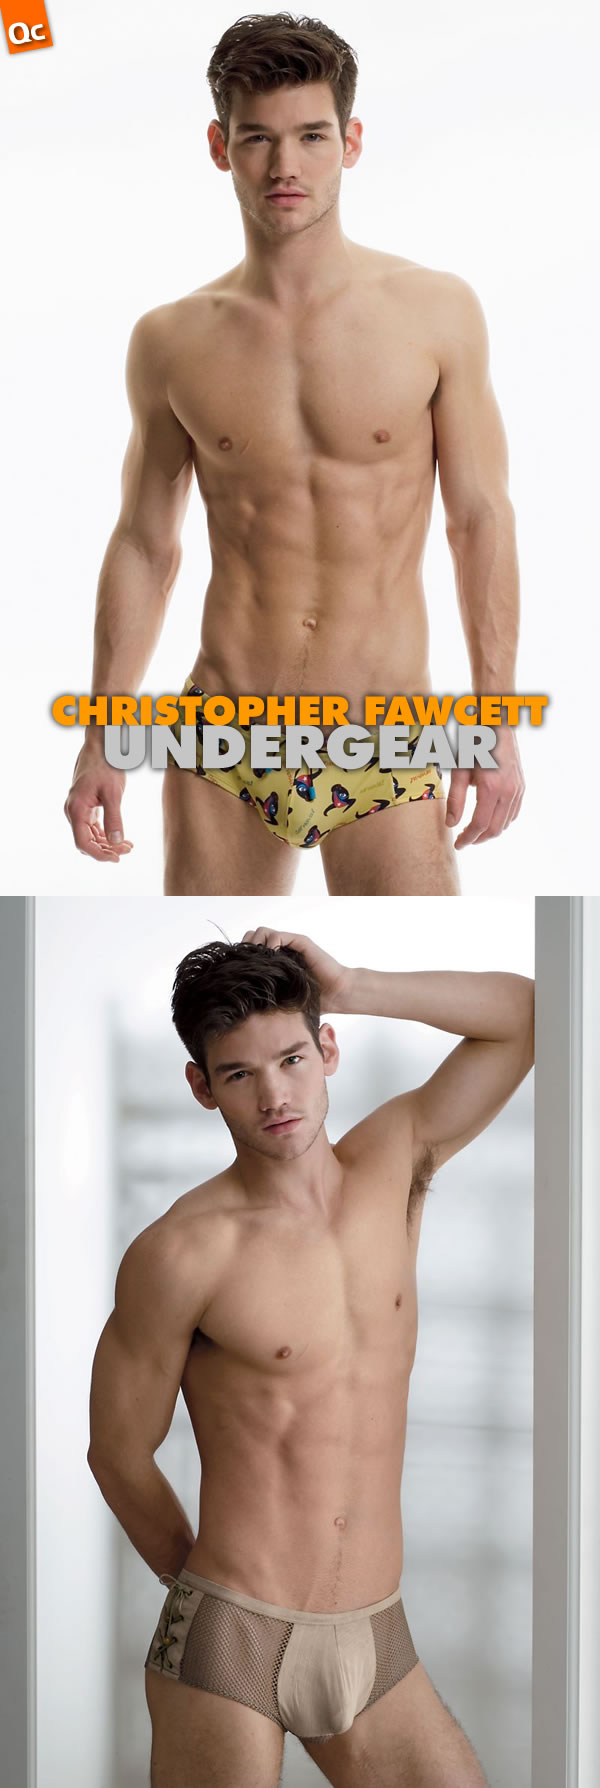 Undergear: Christopher Fawcett